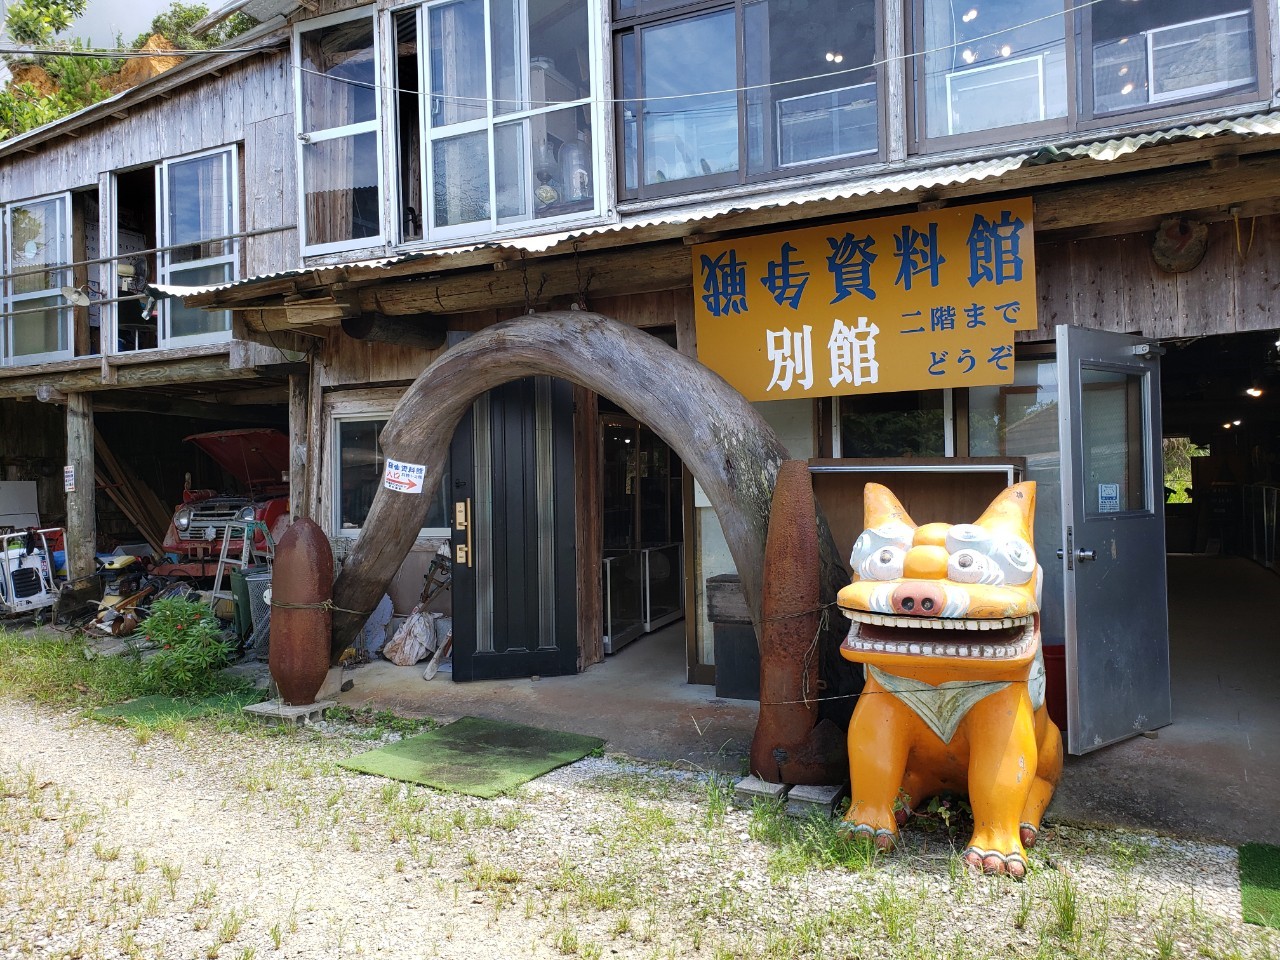 名護市親川にある 民俗資料博物館 パート2 観光情報 Nagos Okinawa Web Magazine